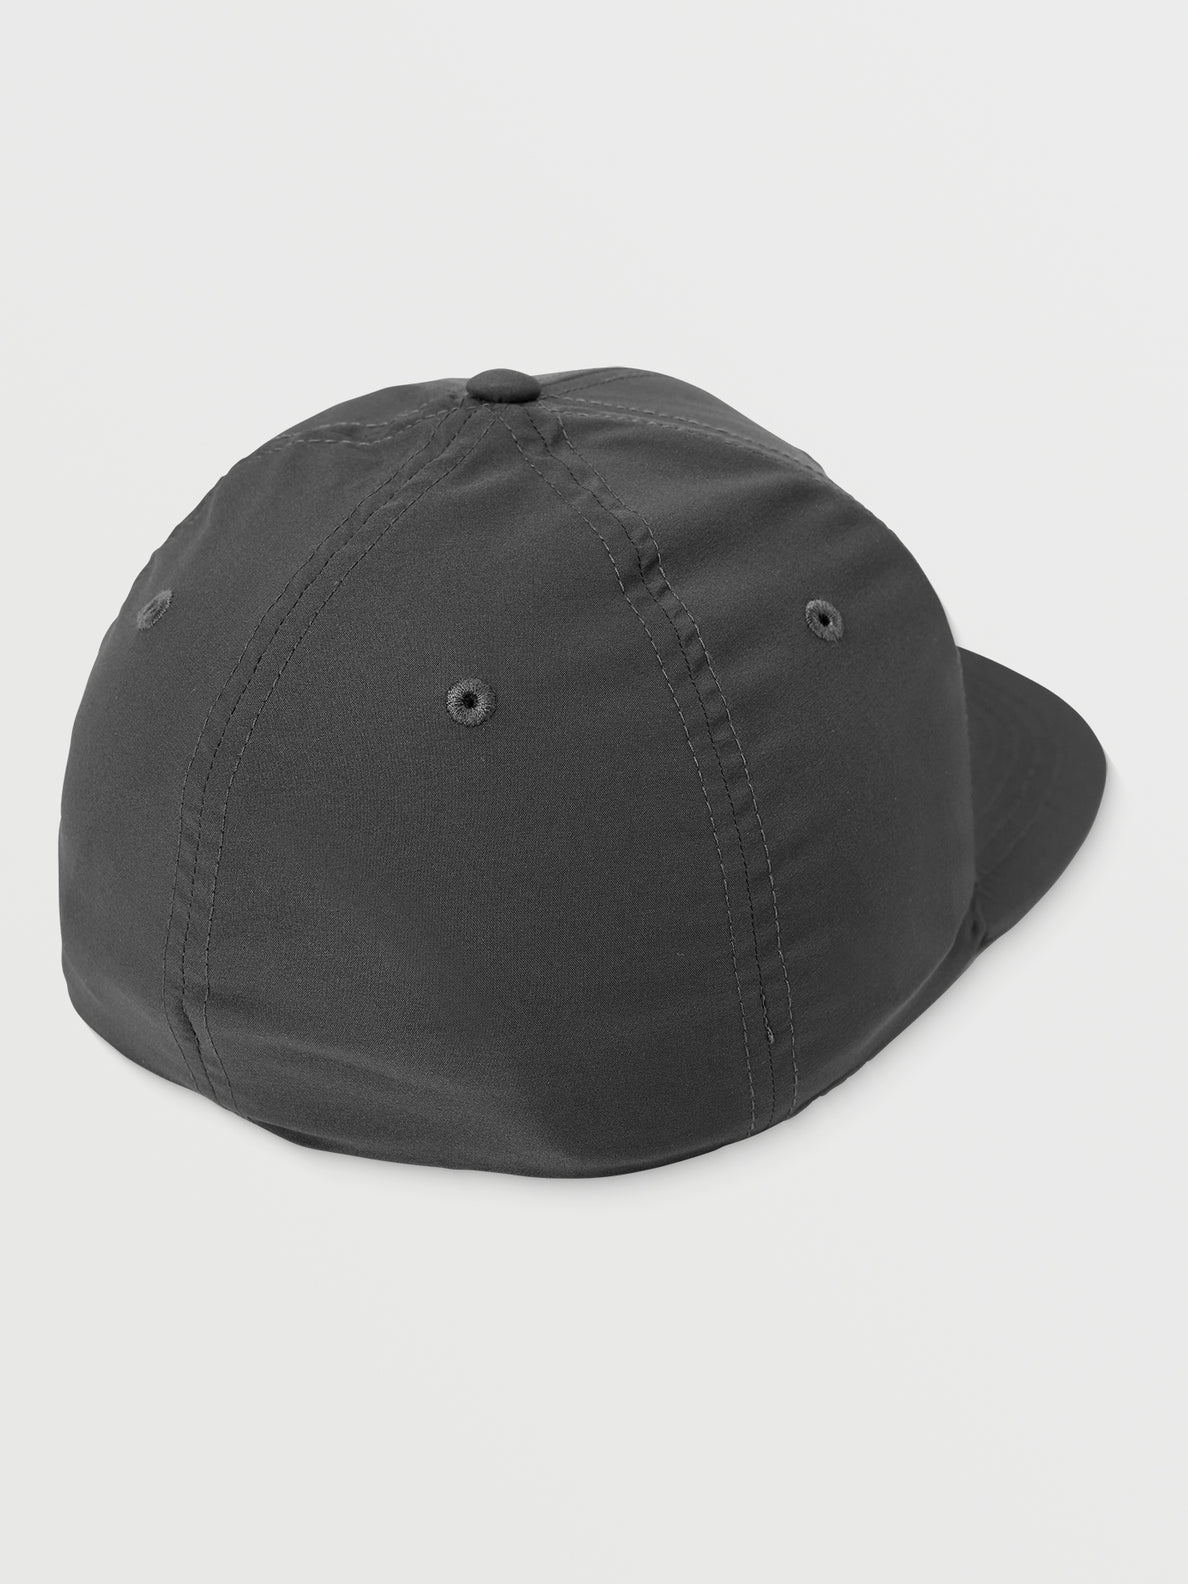 V Euro Xfit Hat - Asphalt Black